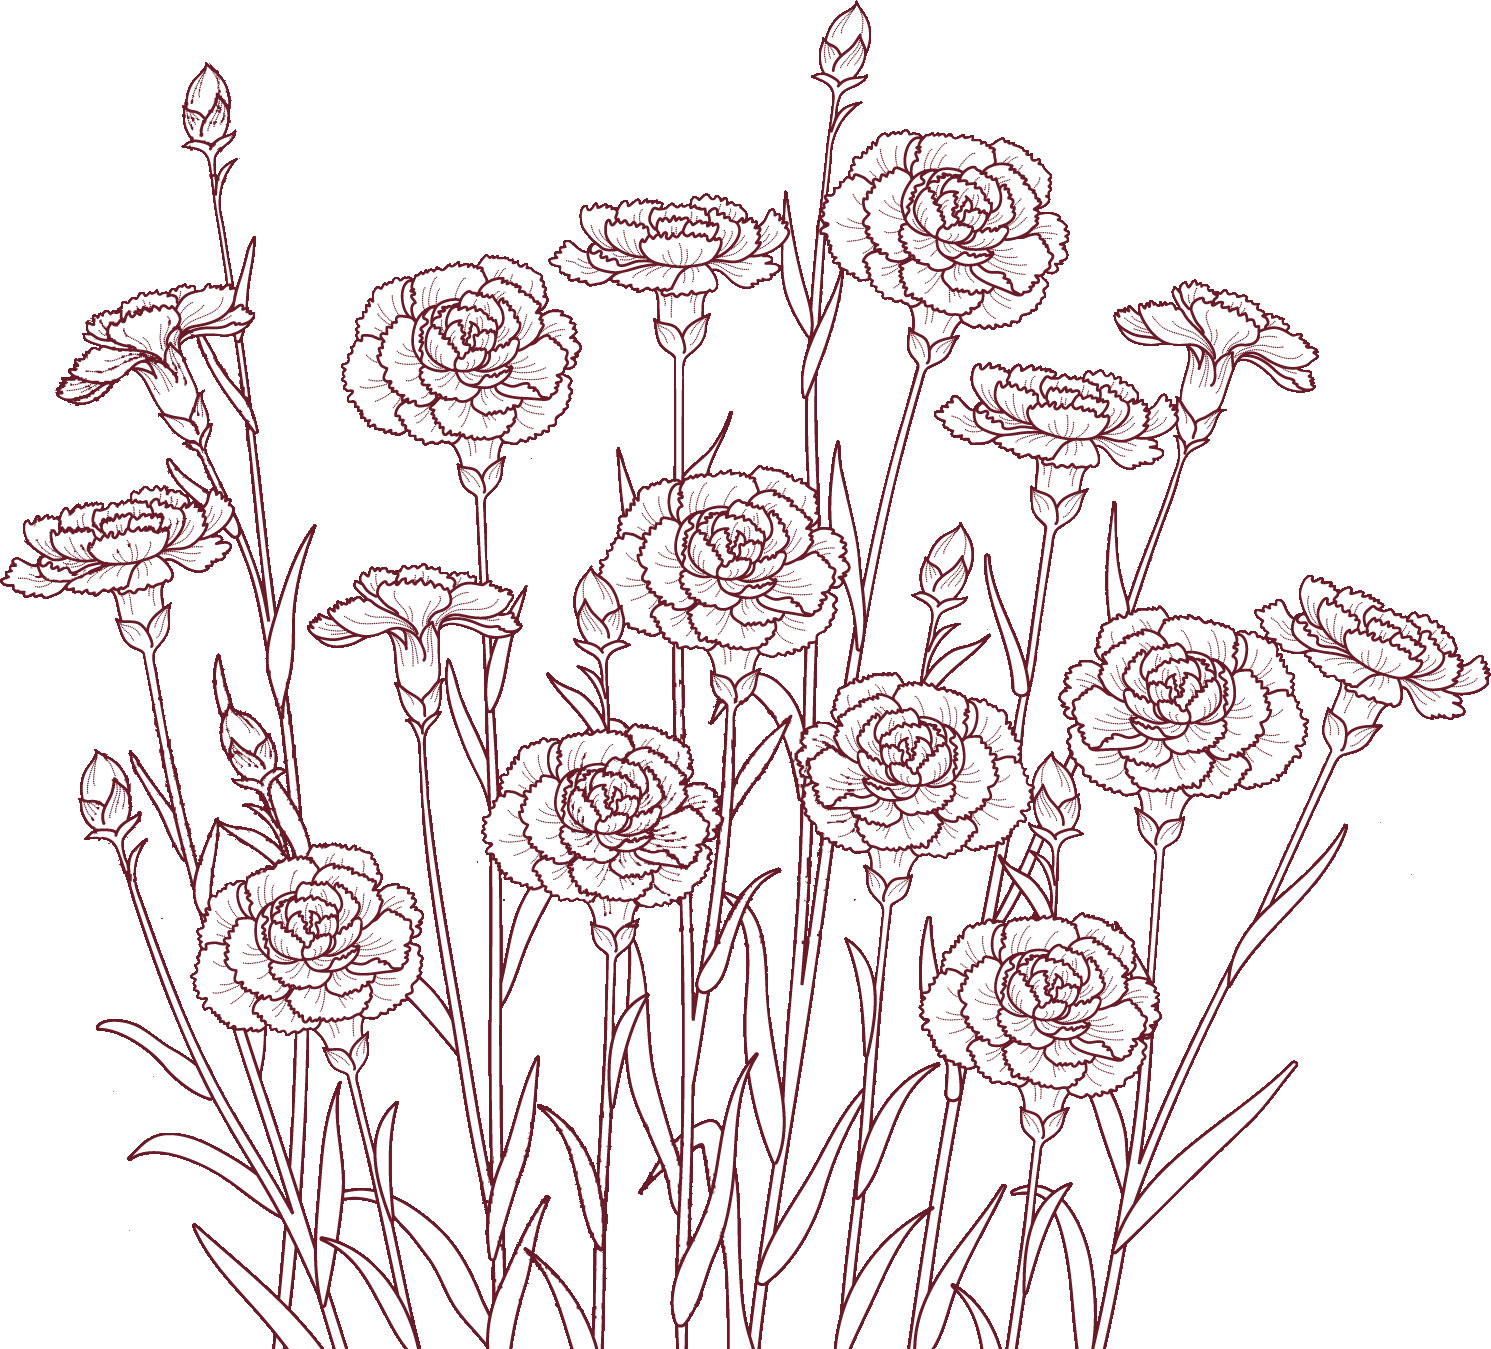 白黒の花のイラスト-群生・透過色・つぼみ